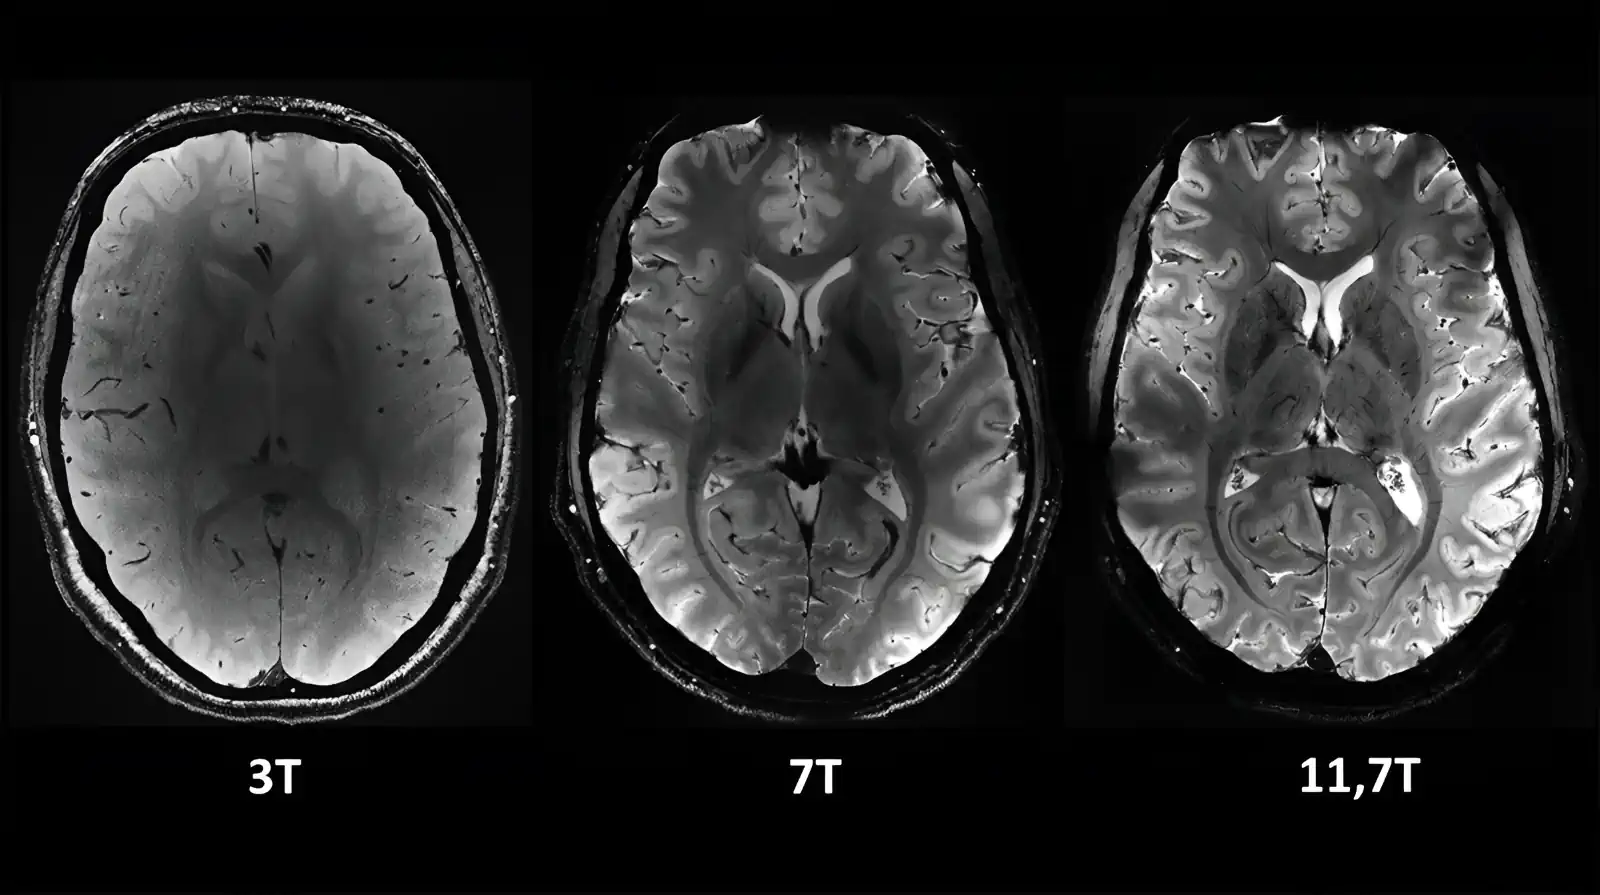 L'IRM la plus puissante au monde, Iseult, capture les premières images sans précédent du cerveau humain